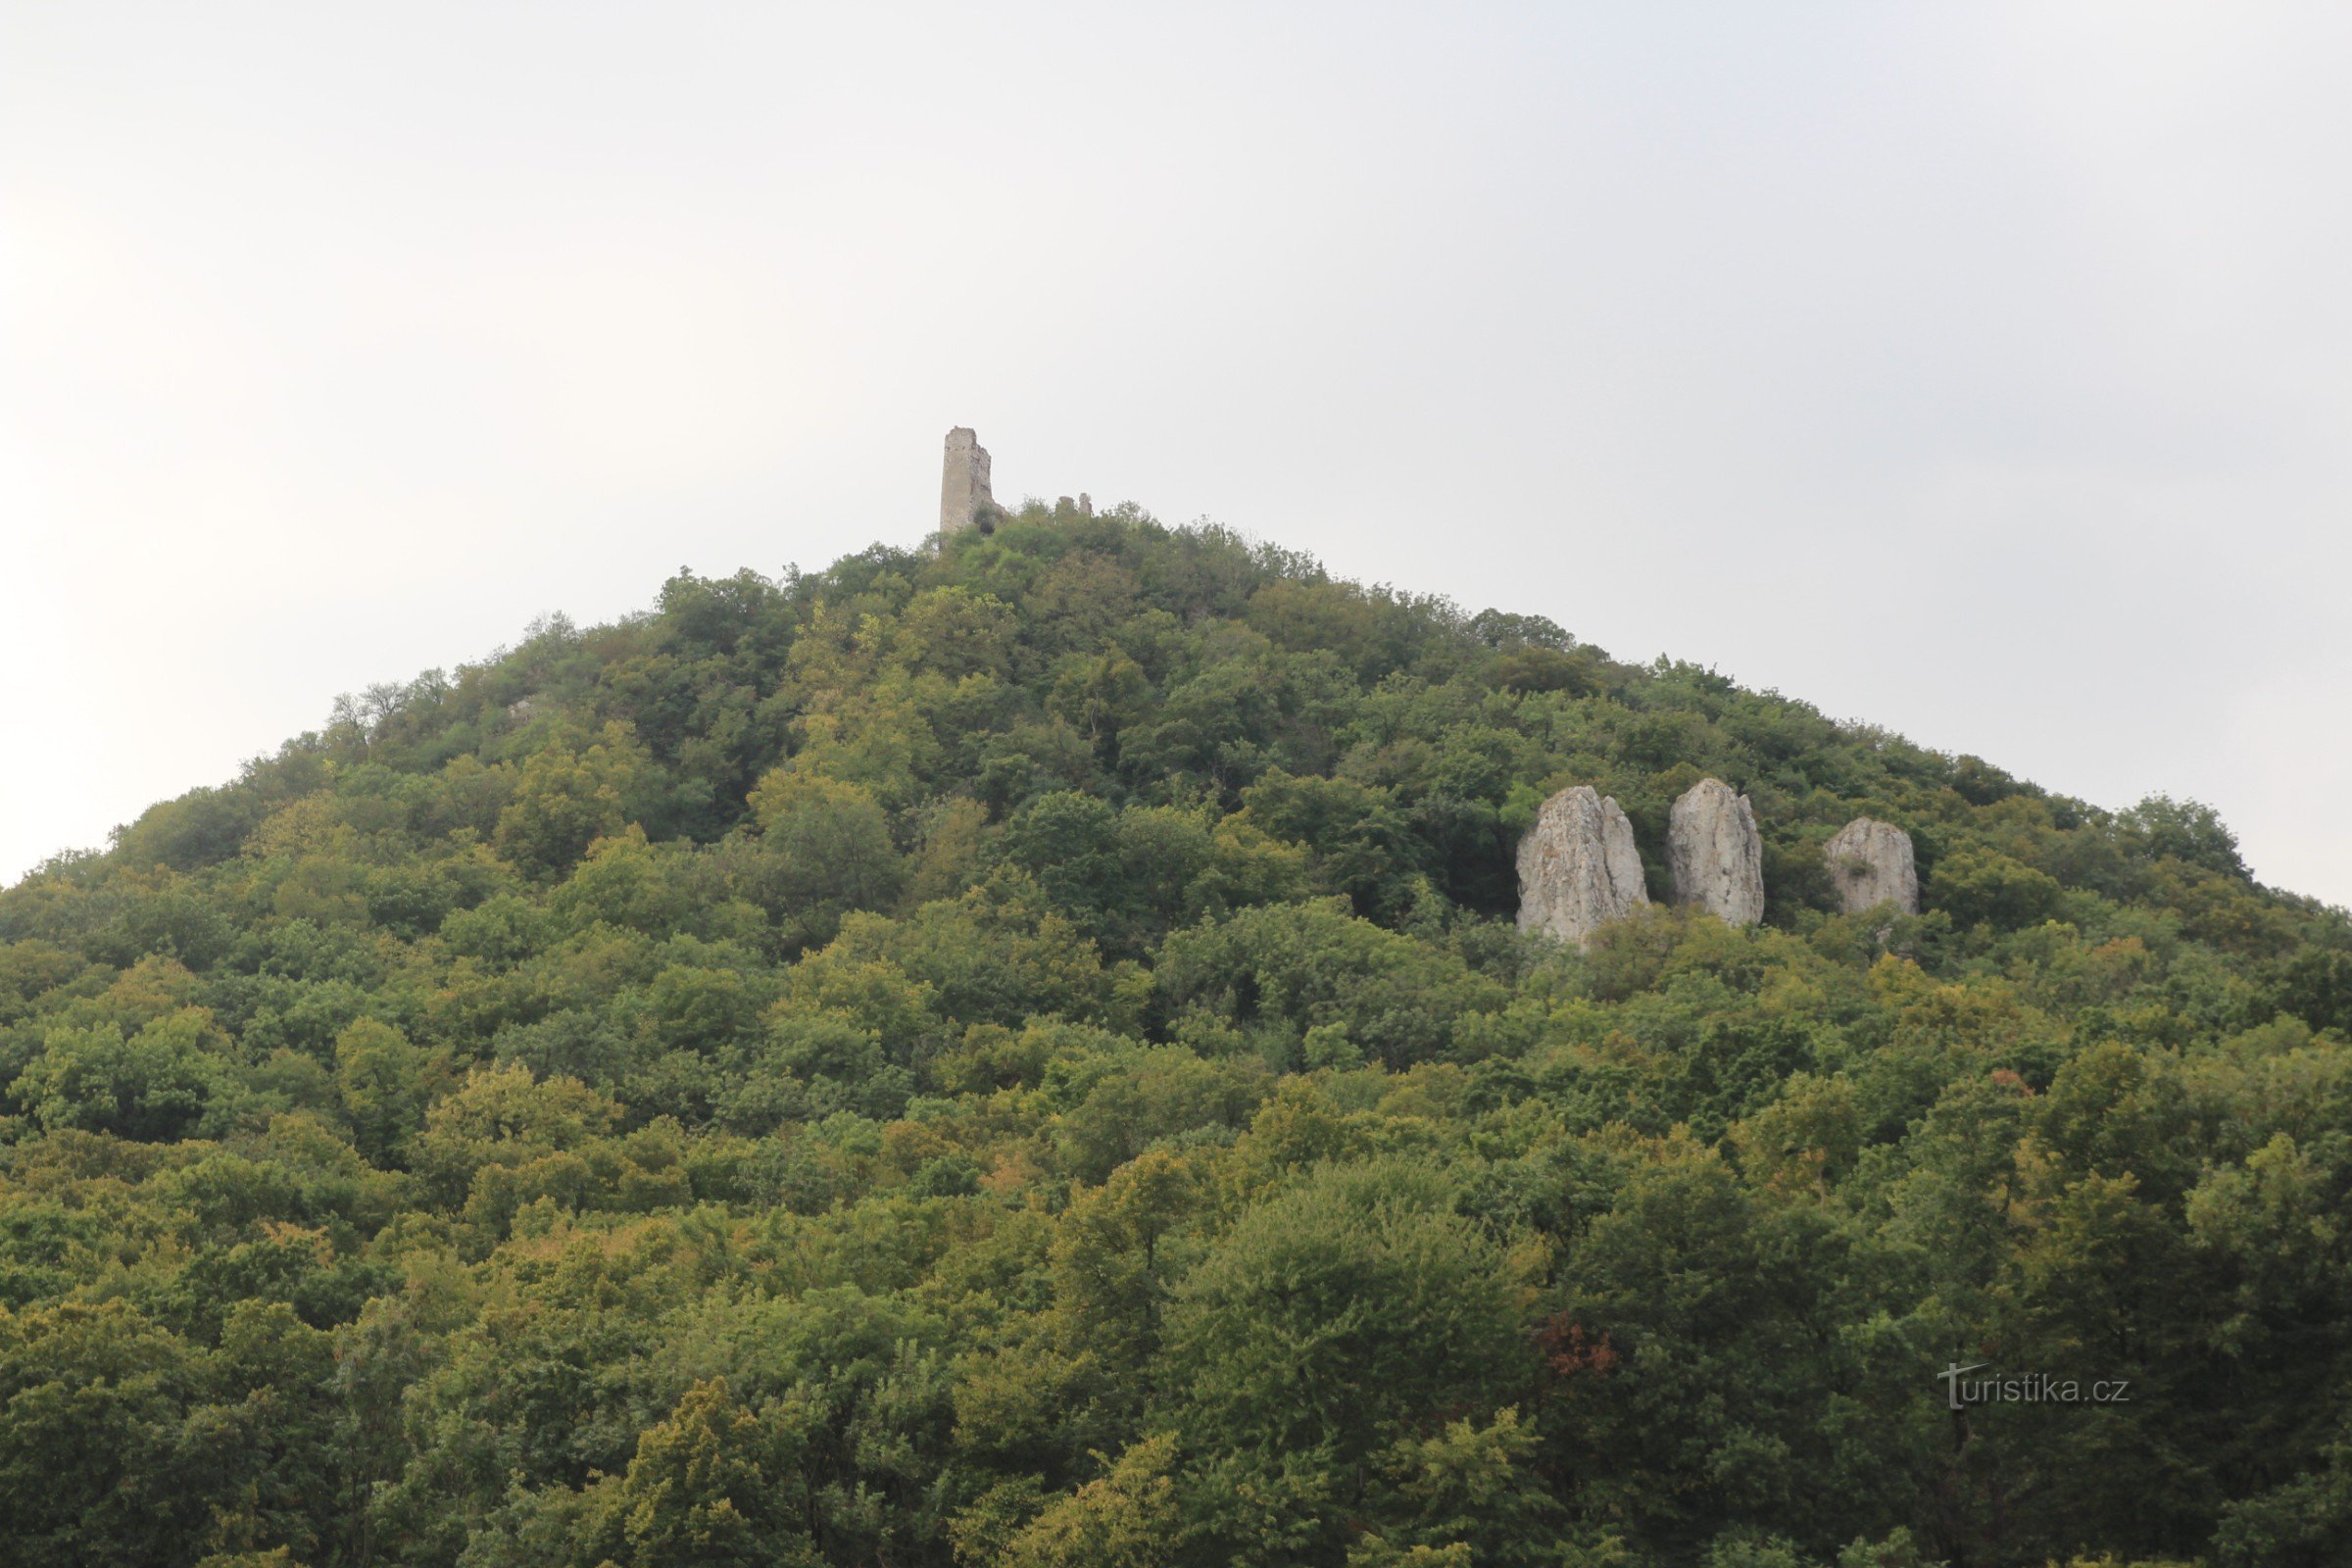 Děvín - die Felsformation Drei Jungfrauen, auf deren Spitze sich die Ruine der Burg Děvičky befindet